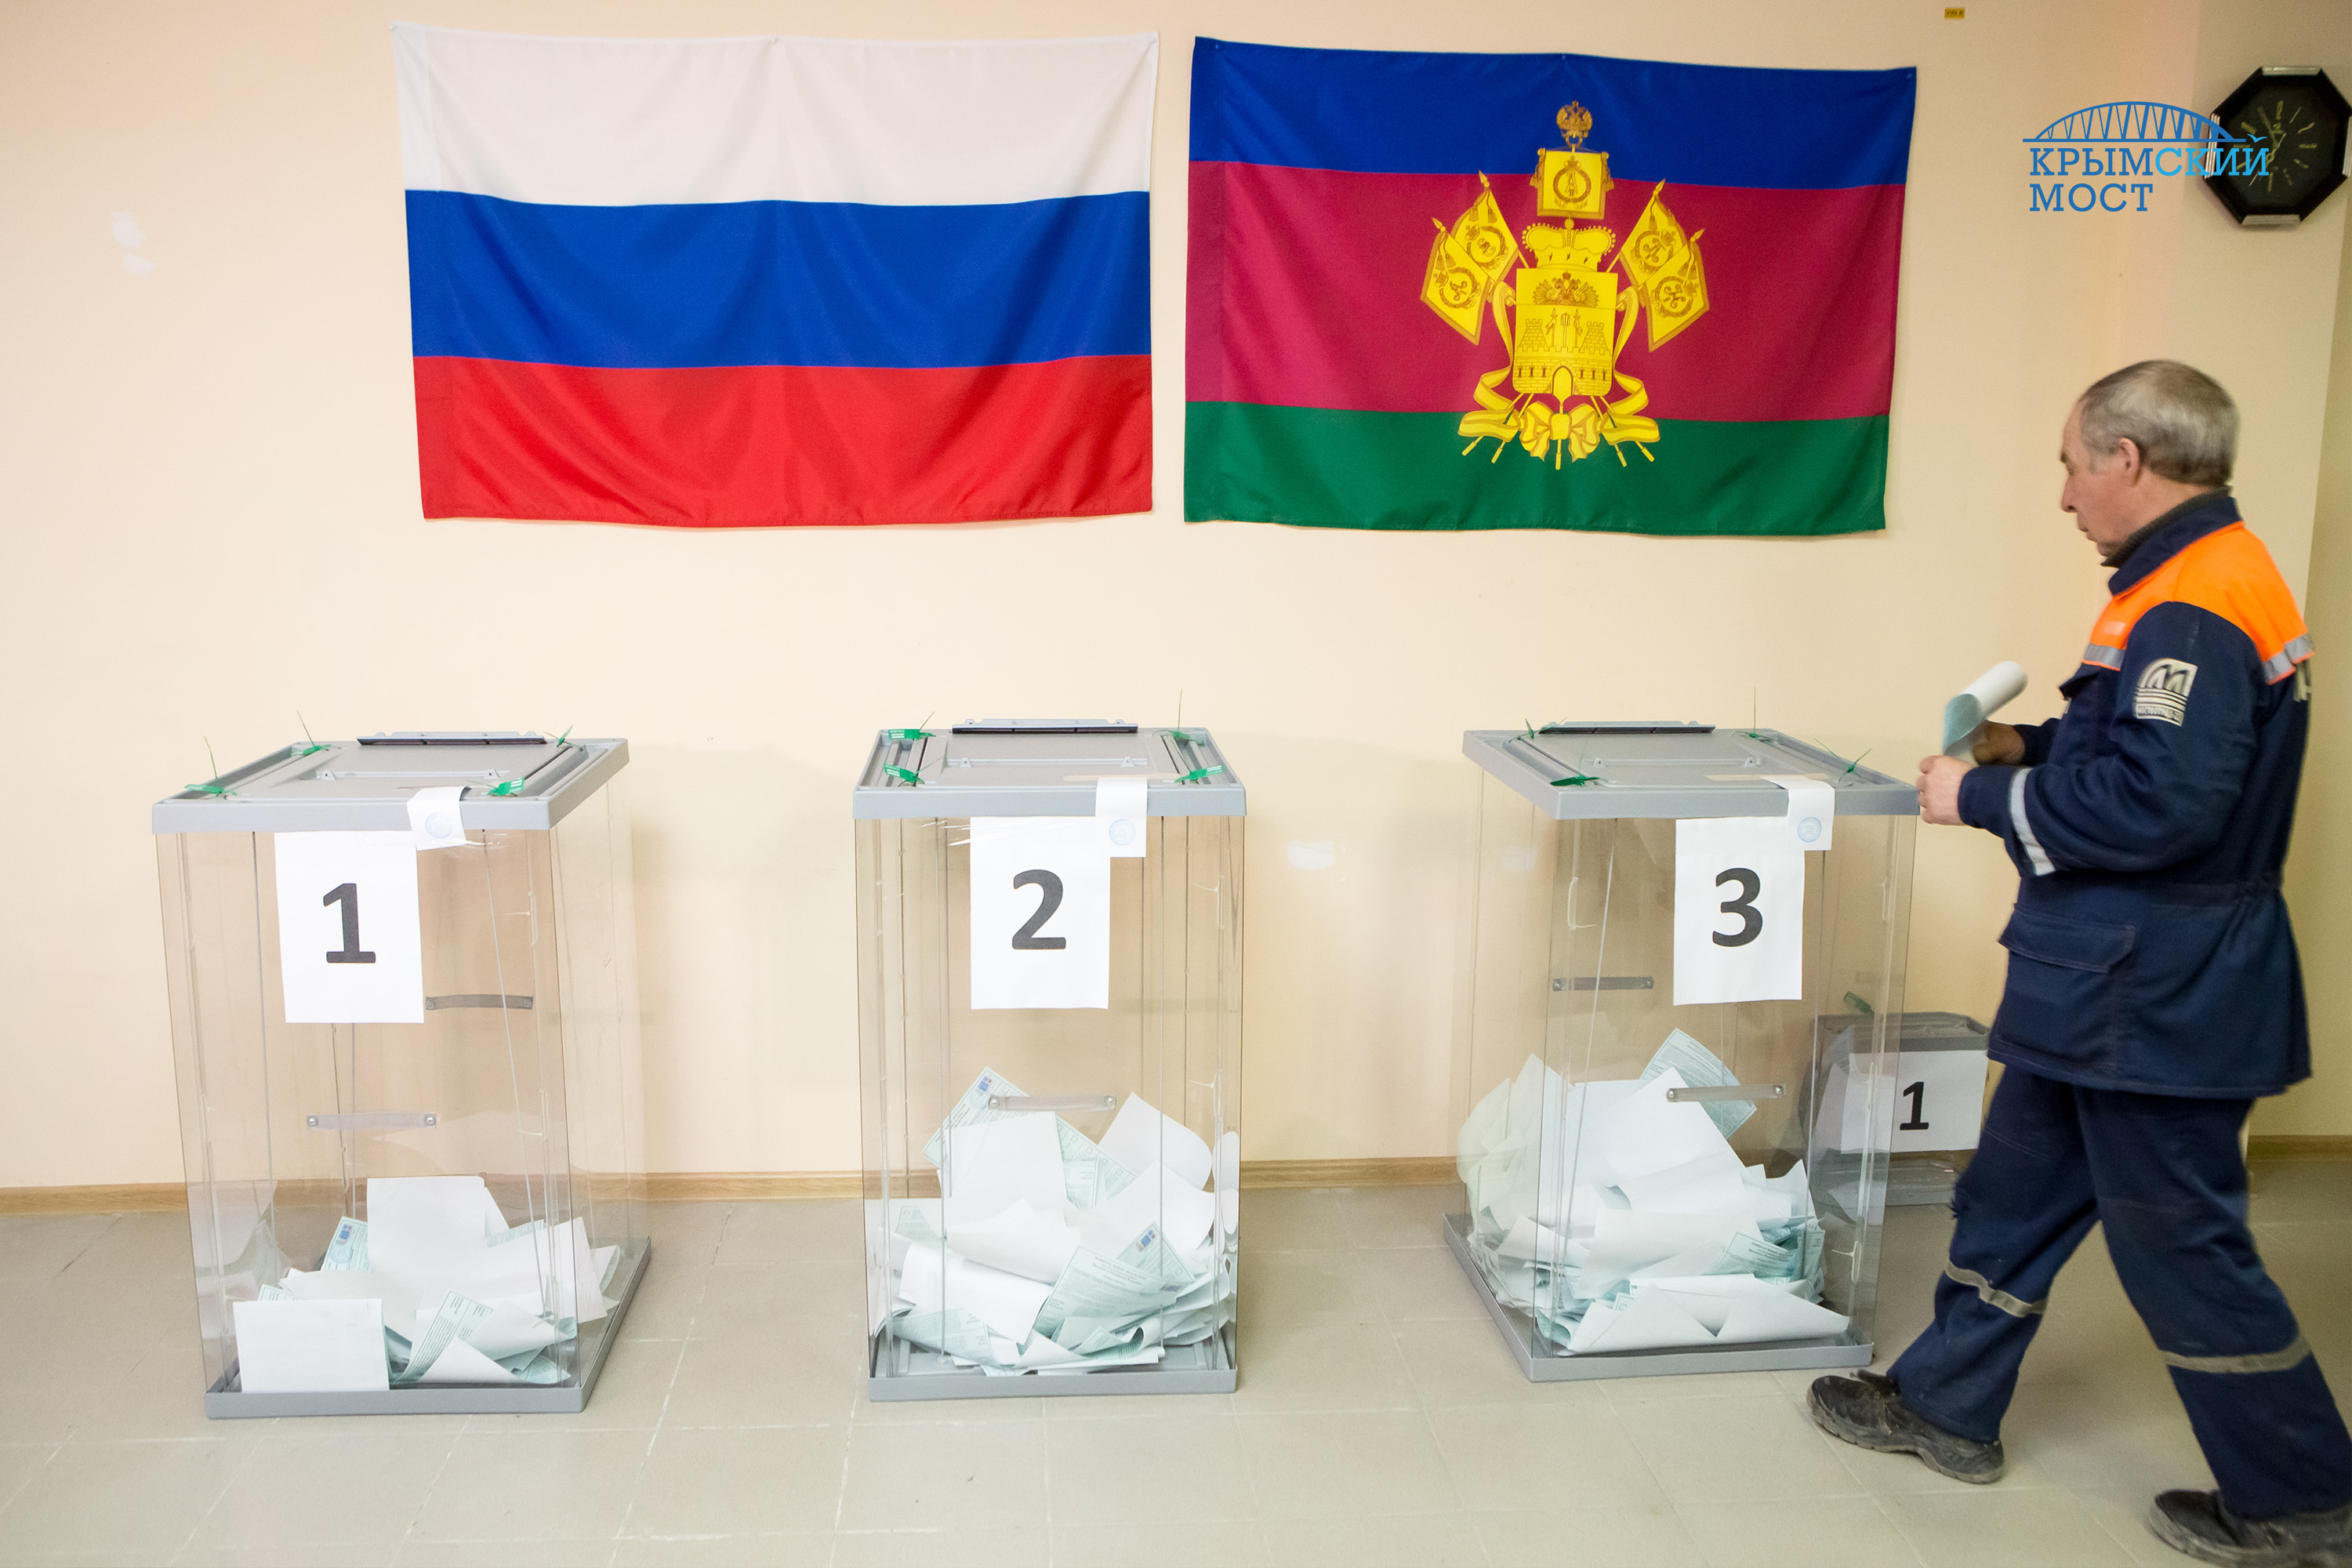 Крымский мост голосование. Голосование на избирательном участке фото. Явка на выборы президента 2018 Крым.